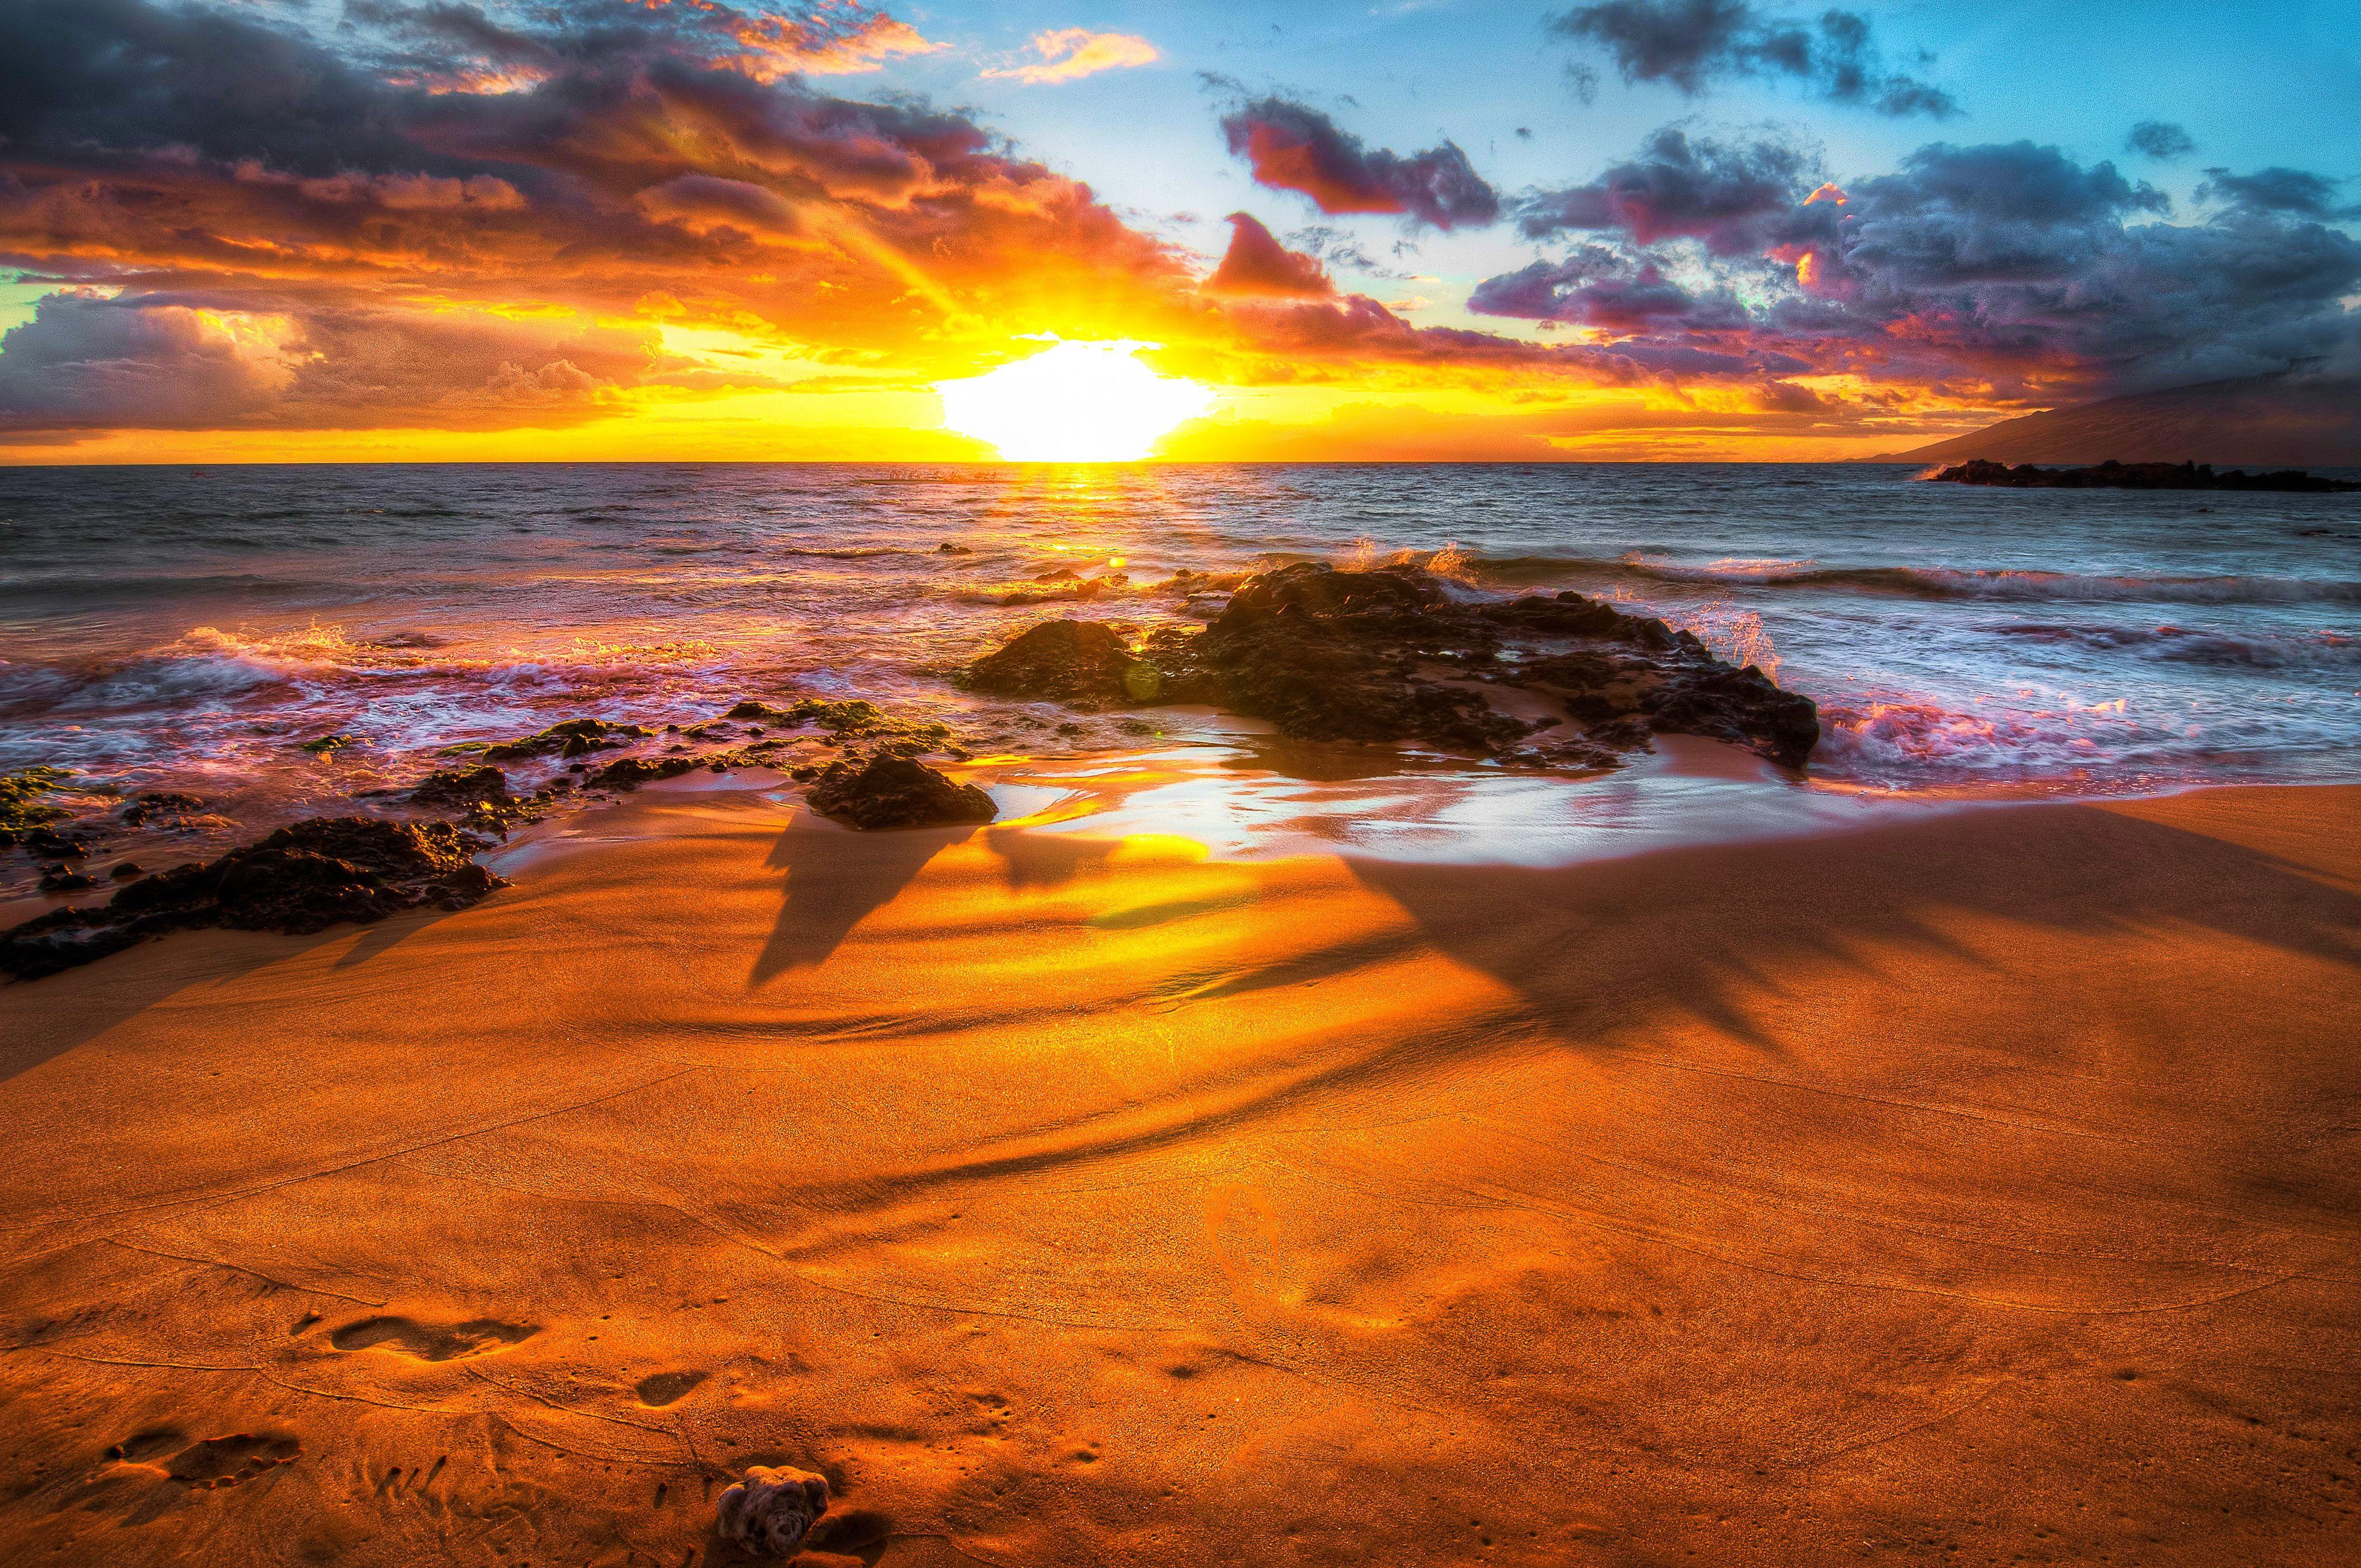 HD Sunset Beaches Backgrounds | PixelsTalk.Net